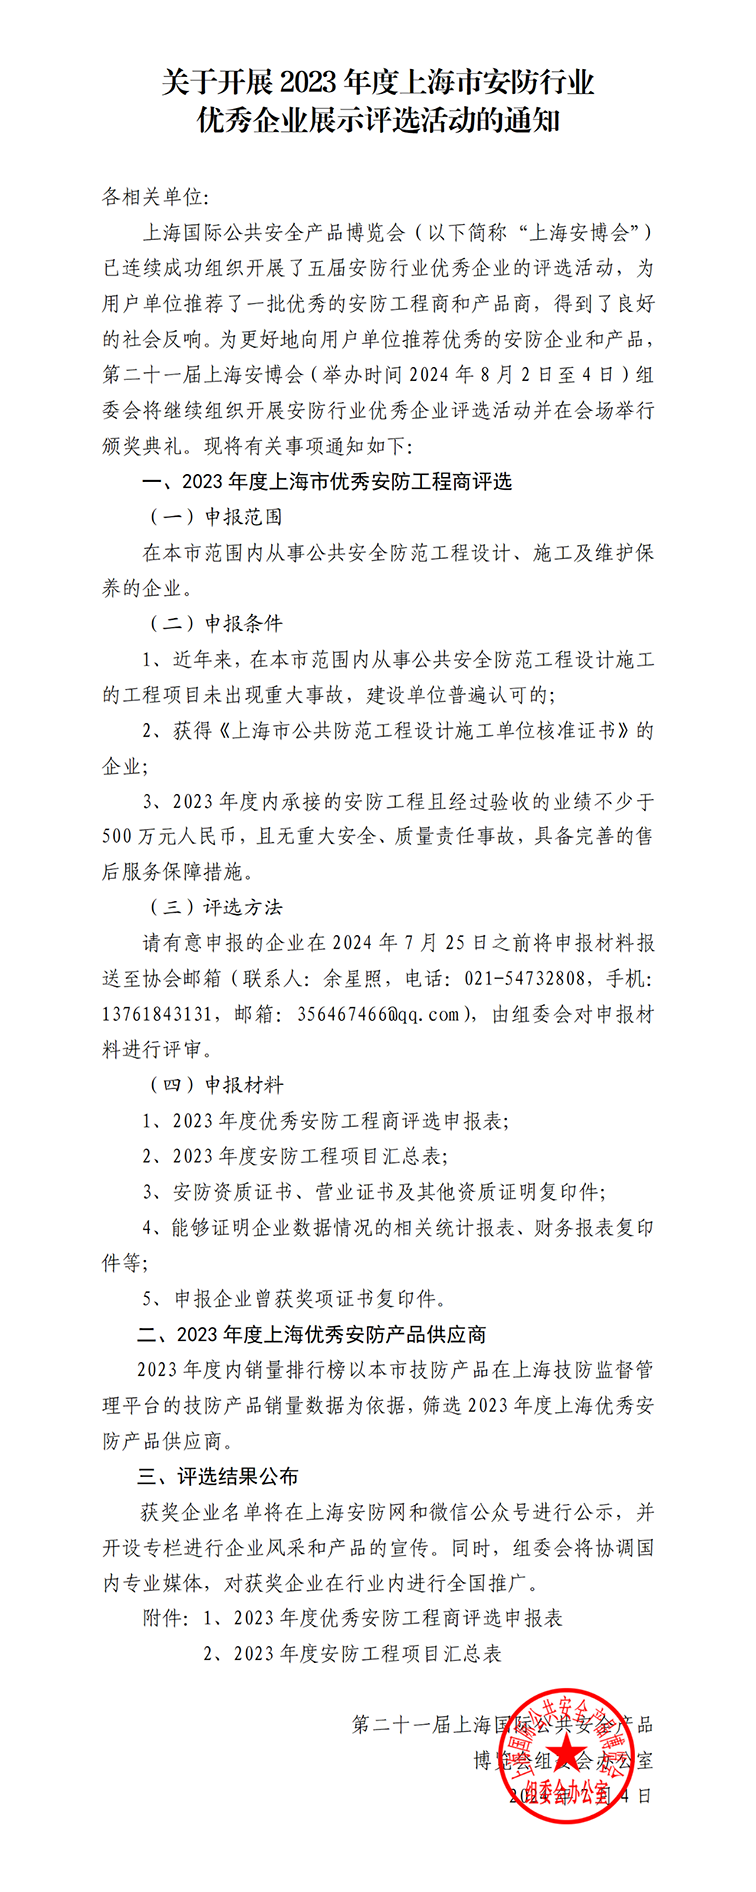 关于开展2023年度上海市安防行业优秀企业展示评选活动的通知1w.png